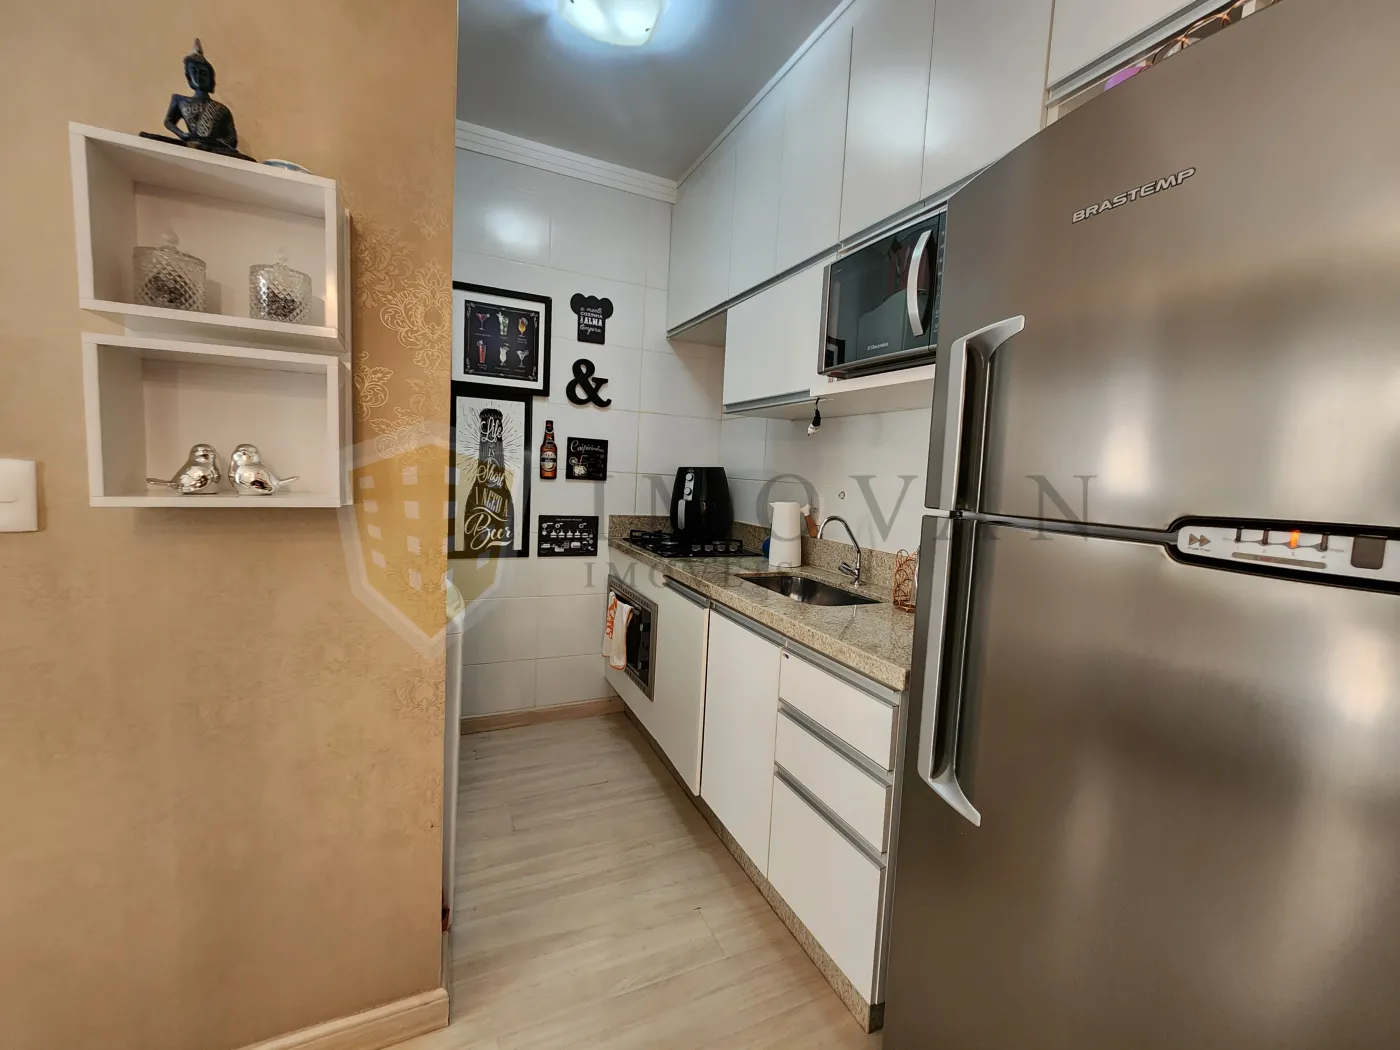 Comprar Apartamento / Padrão em Ribeirão Preto R$ 330.000,00 - Foto 5